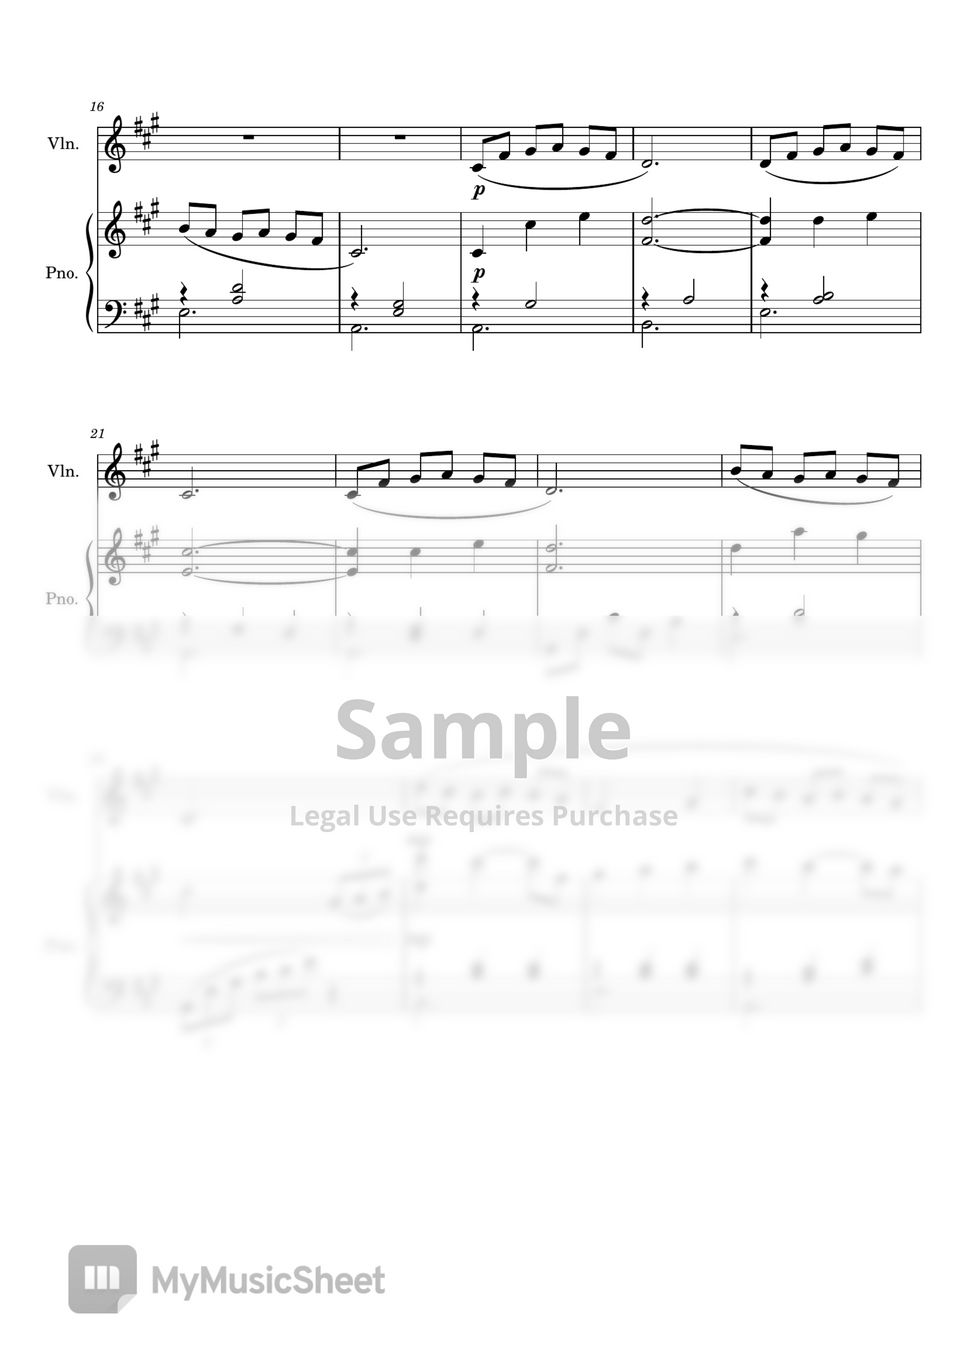 Mia and Sebastian's Theme - La La Land for Violin and Piano Sheets by ...